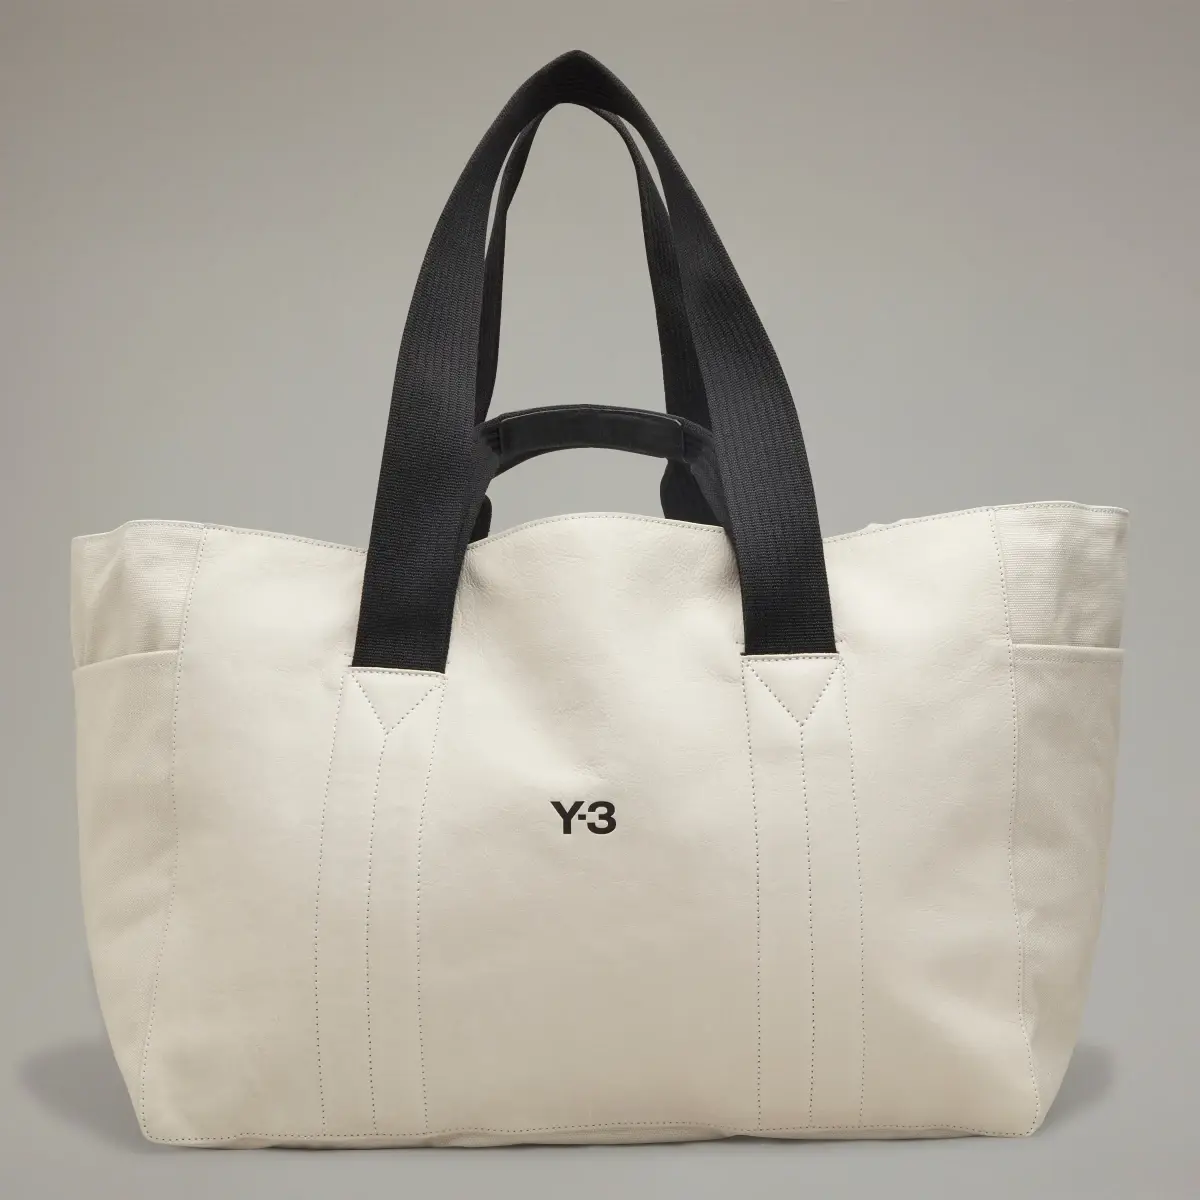 Adidas Y-3 Lux Leather Bag. 2